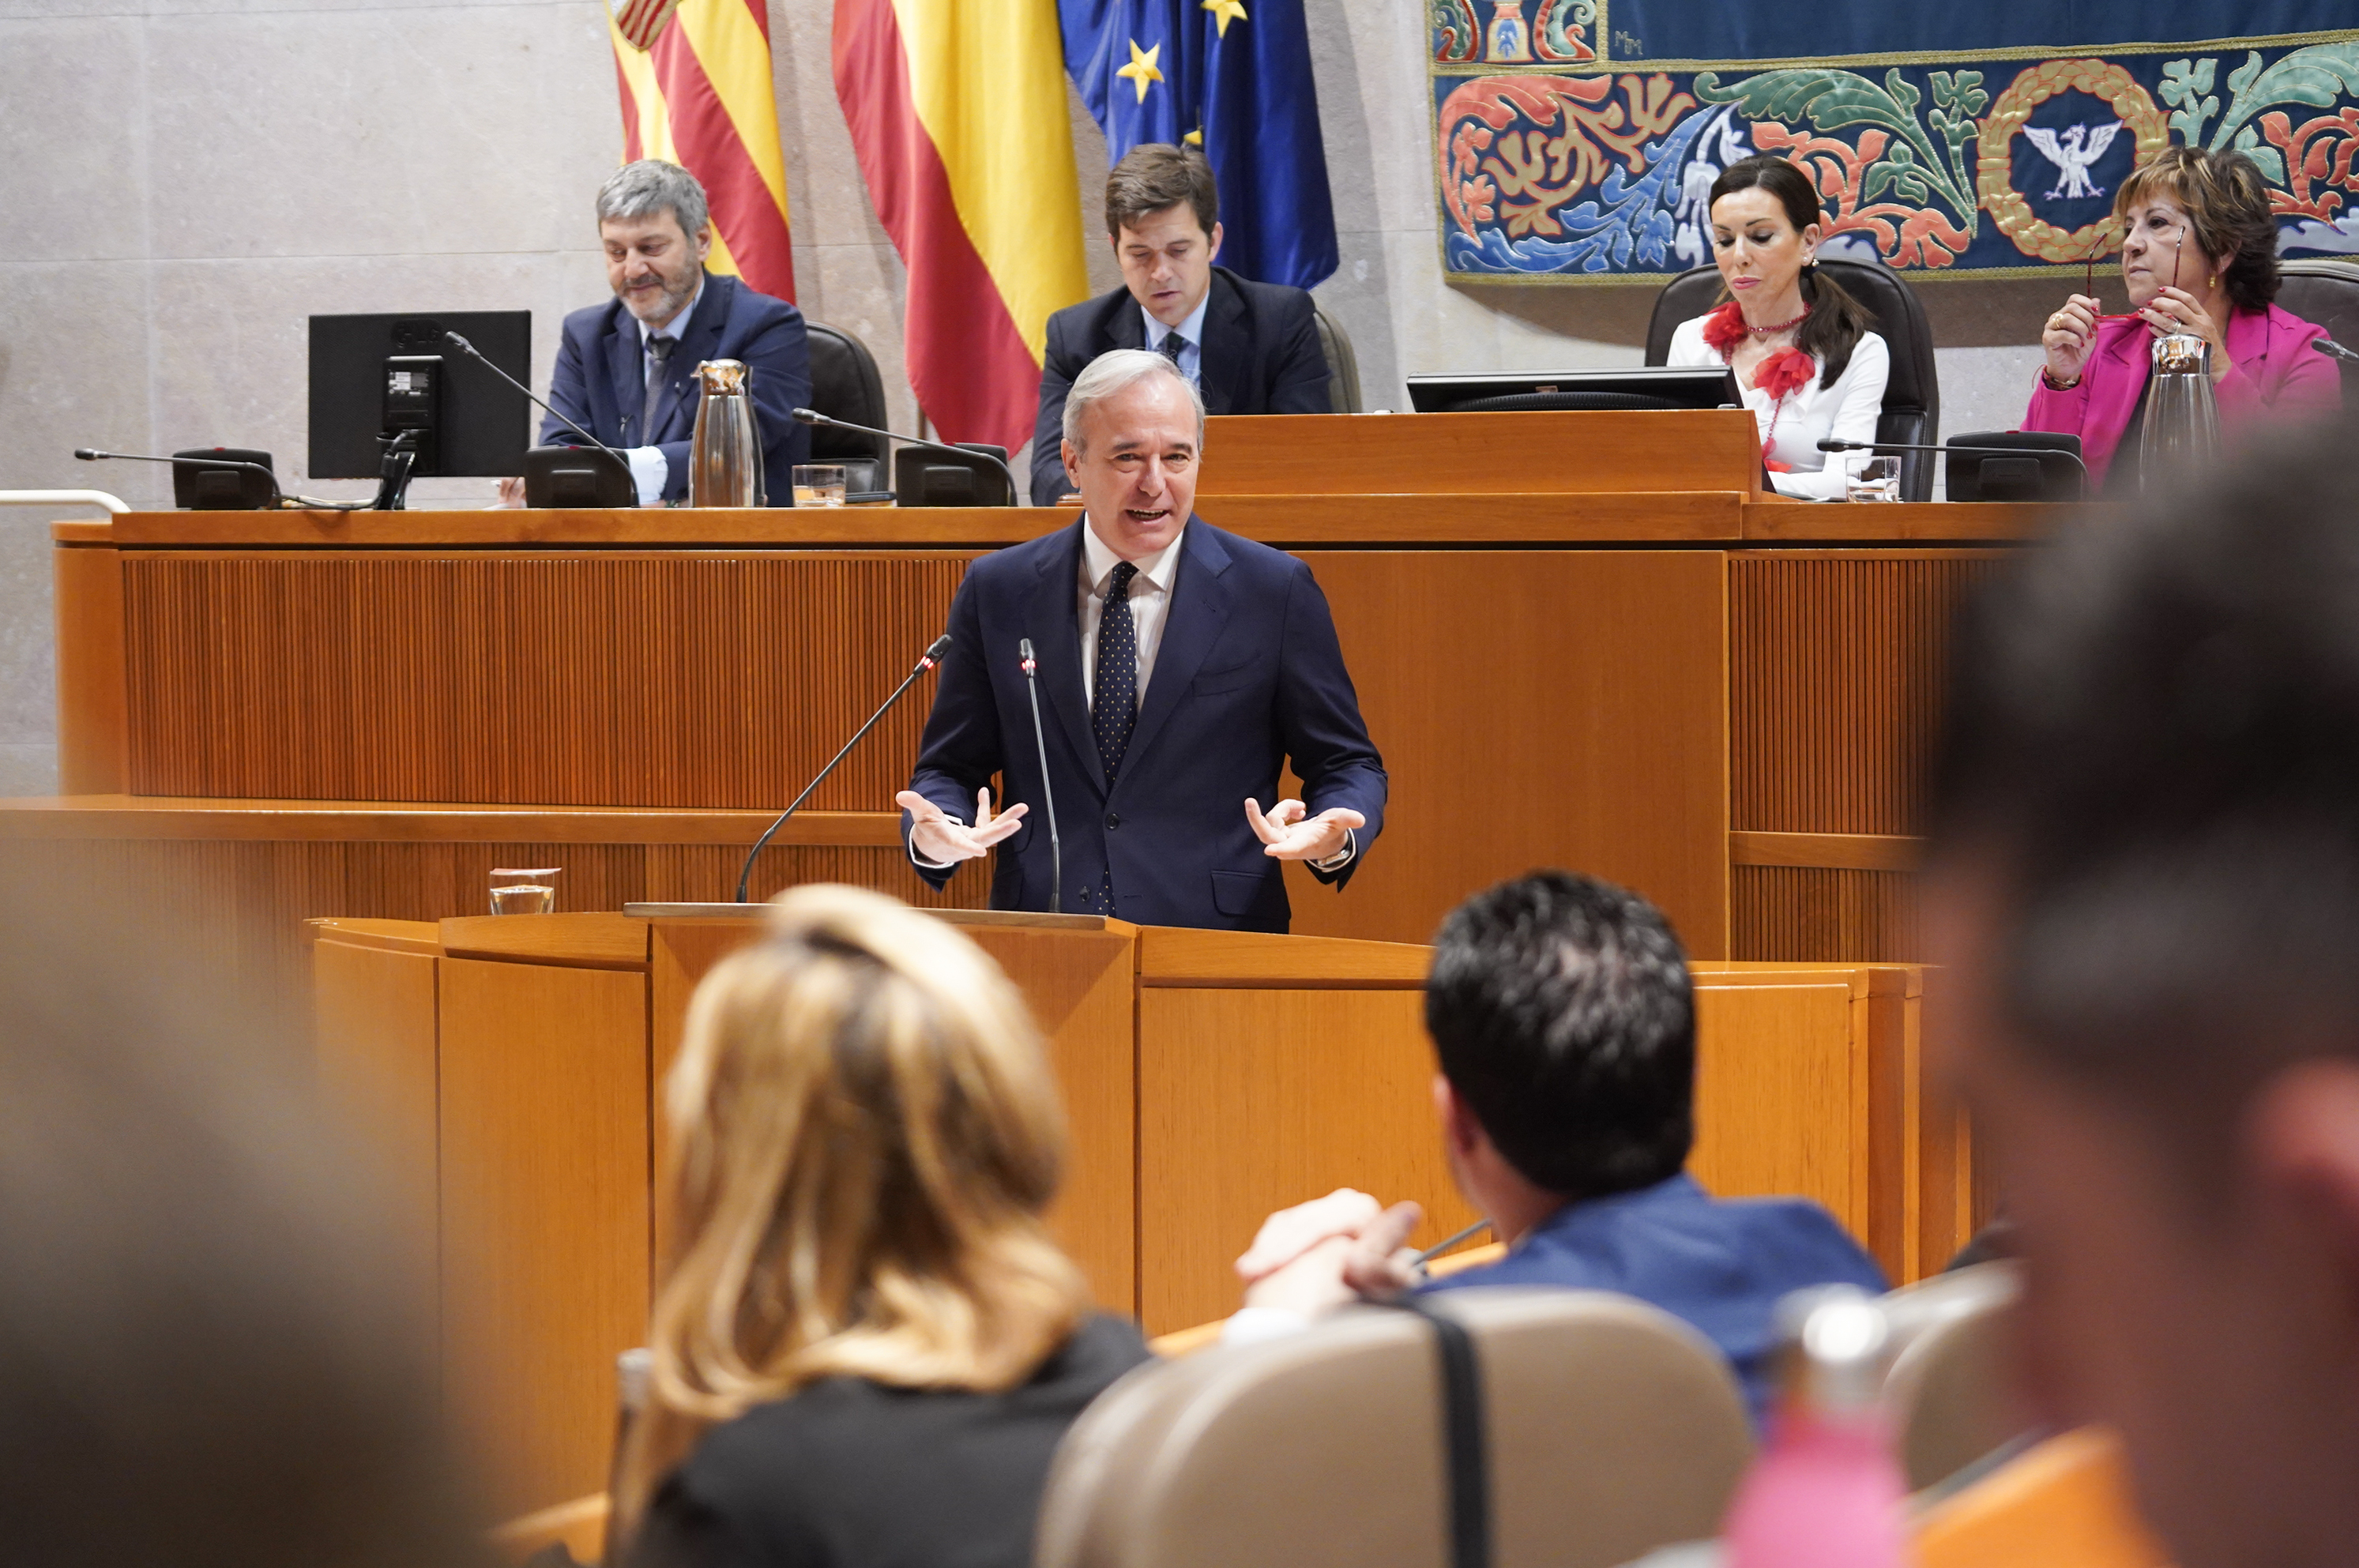 Azcón reitera su "inamovible" rechazo al trasvase del agua del Ebro ante la petición del PP catalán: "En Aragón no sobra ni una gota de agua"